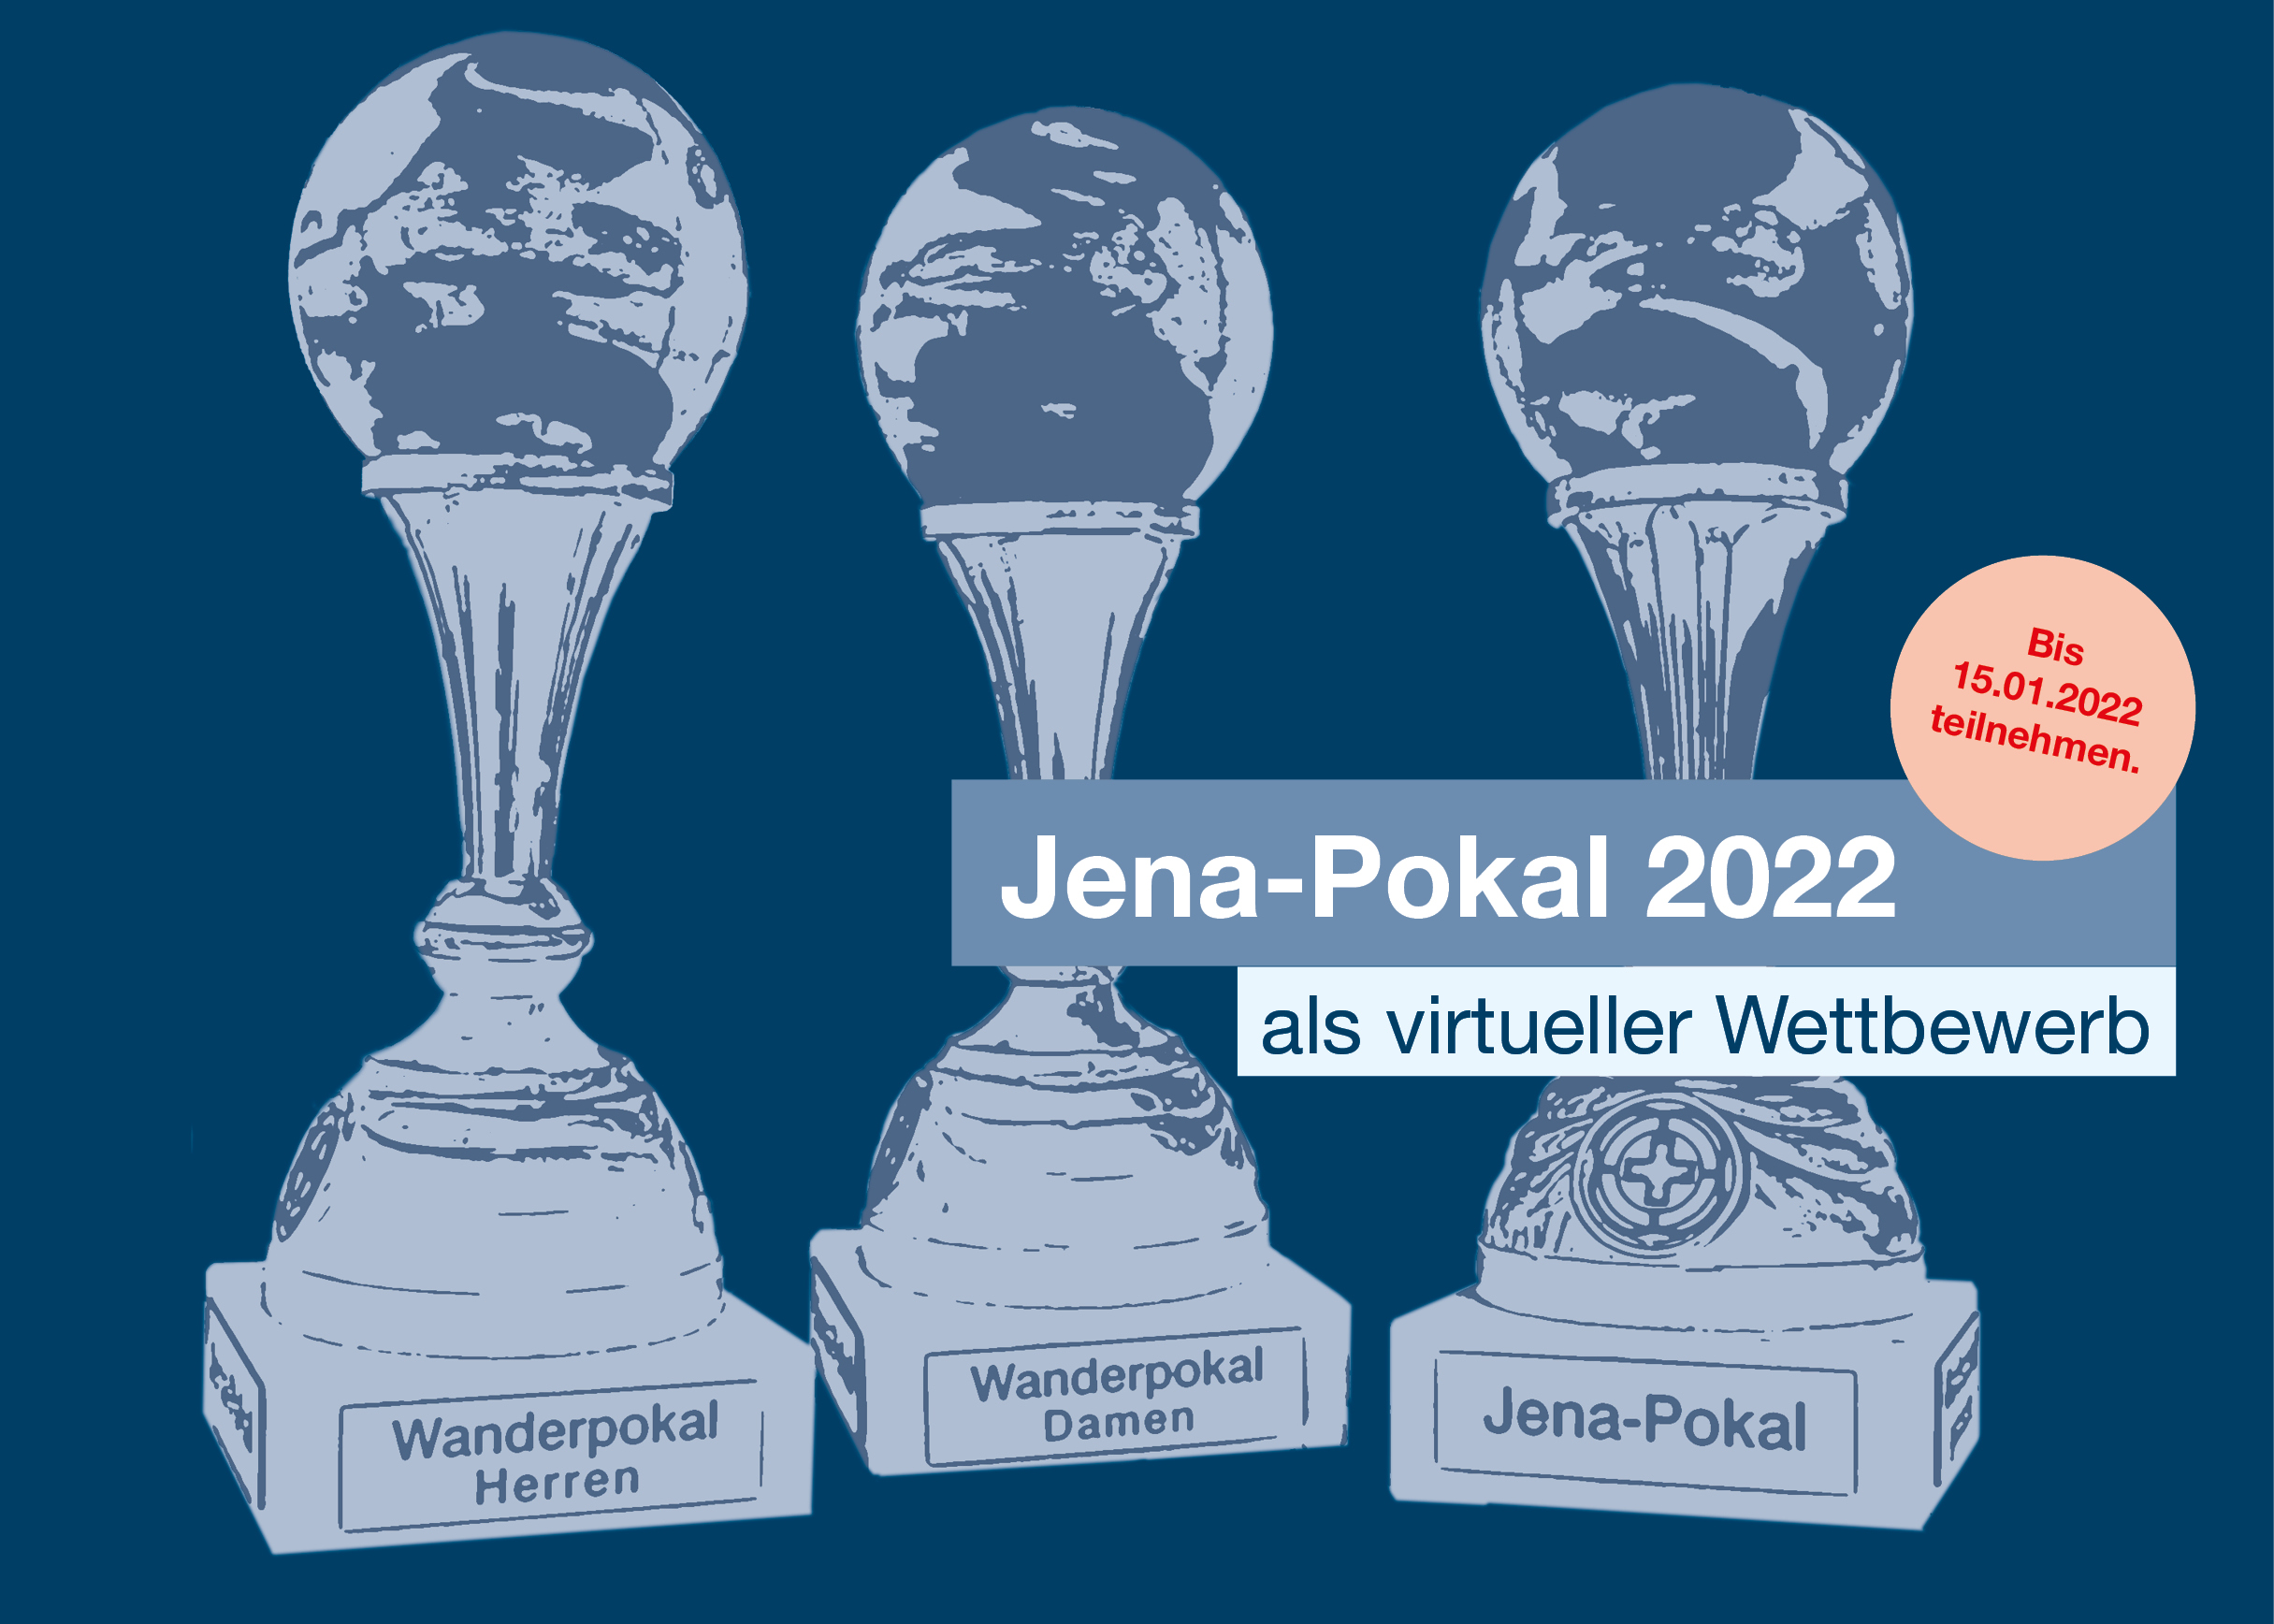 Jena-Pokal 2022 als virtueller Wettbewerb